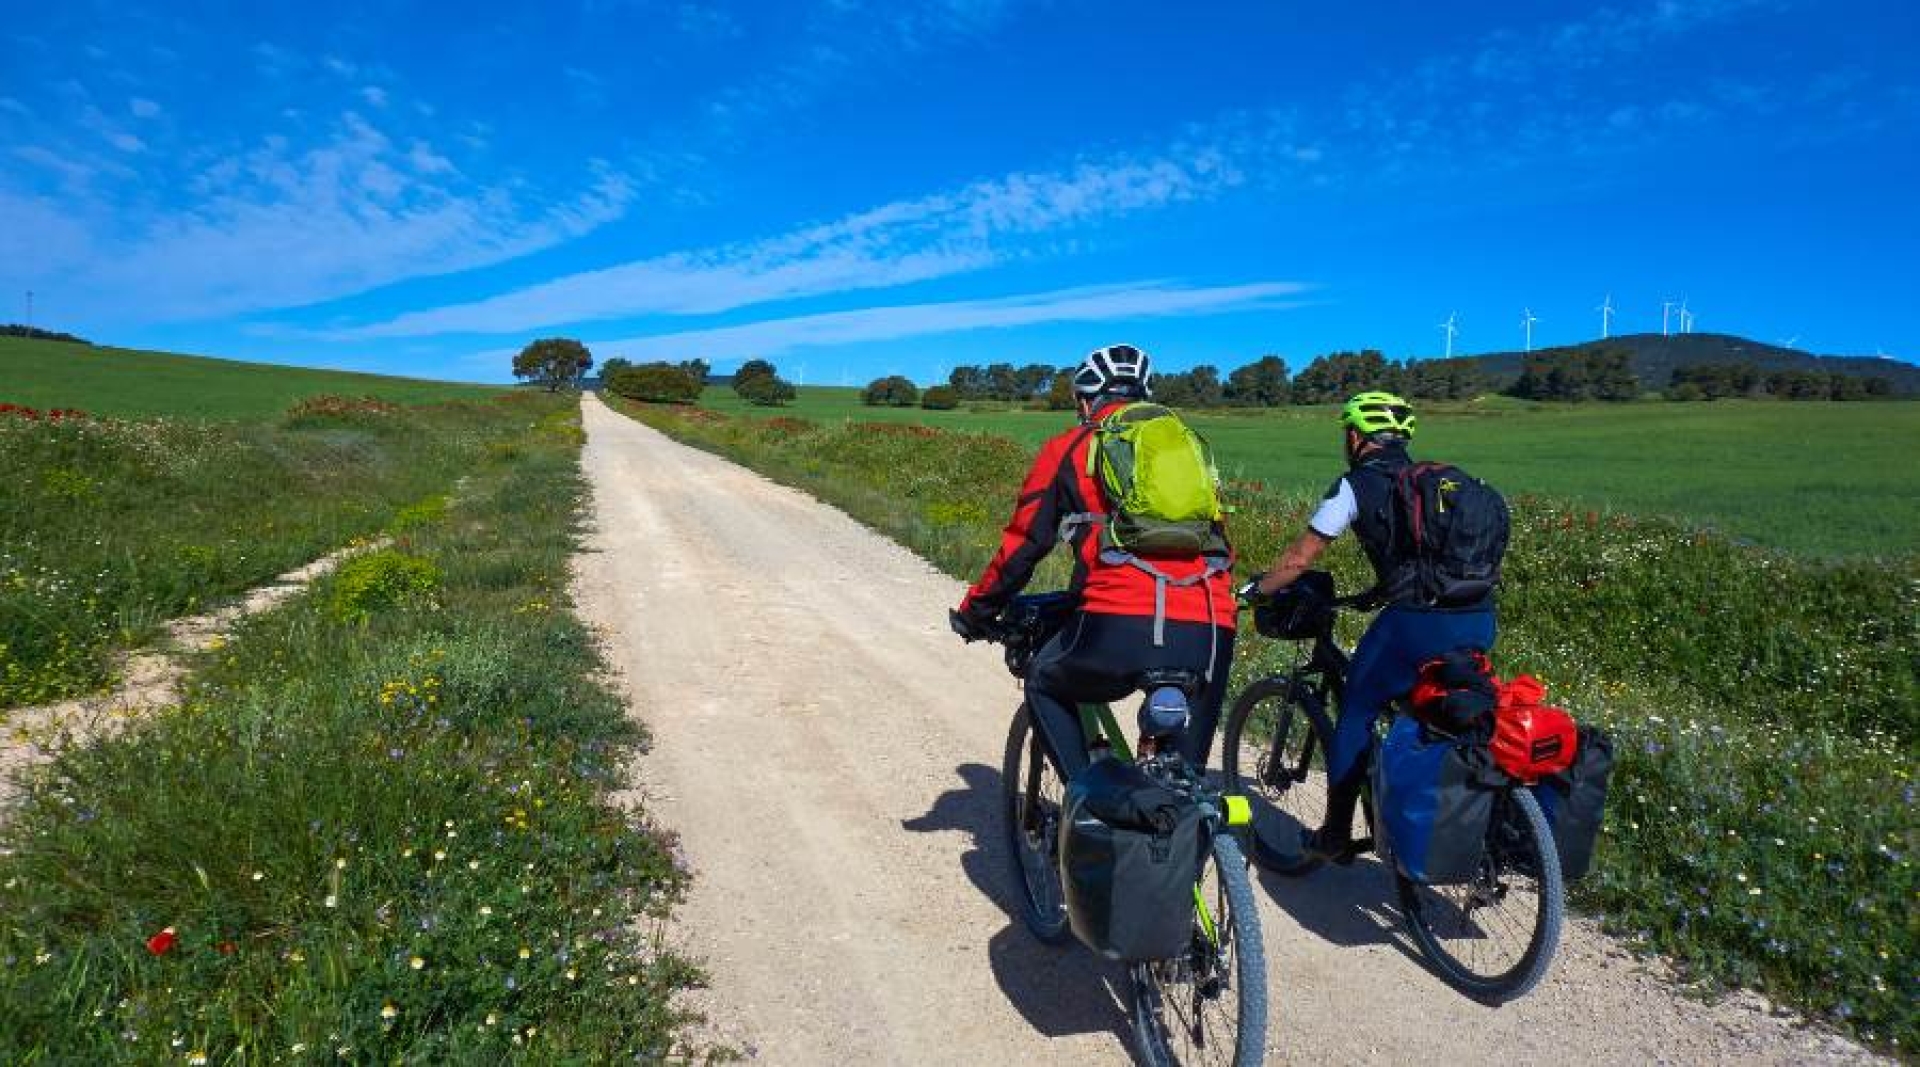 Camino de Santiago  Rutas, Etapas y Albergues a Pie o en Bici